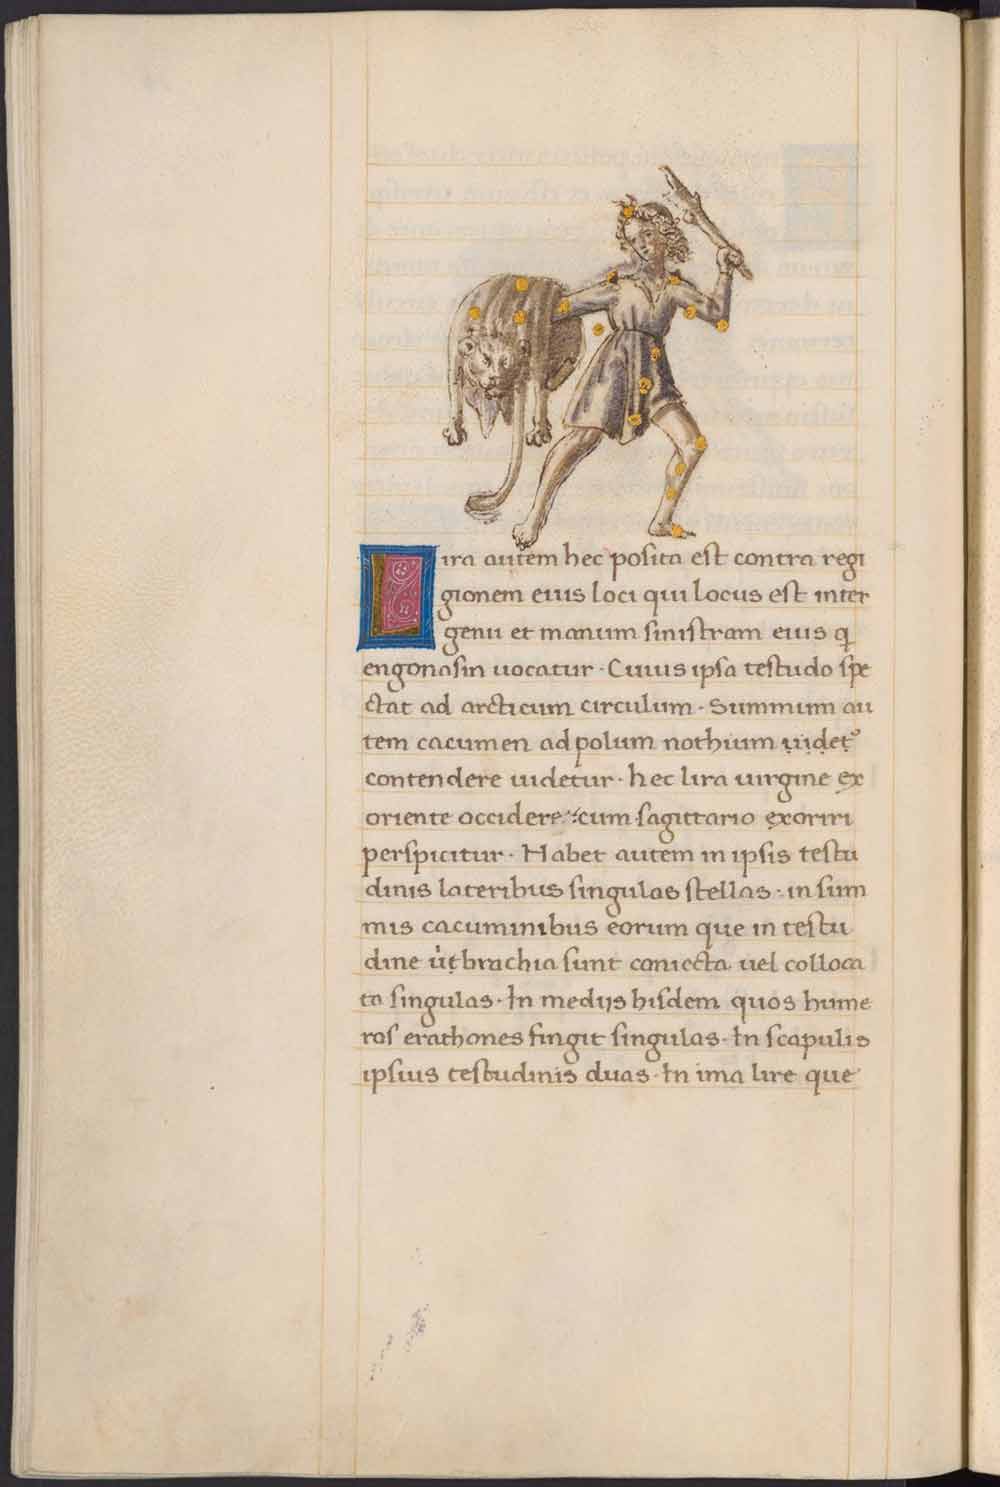 Aldini 490, c. 79v, Bartolomeo Fonzio, Costellazione di Ercole